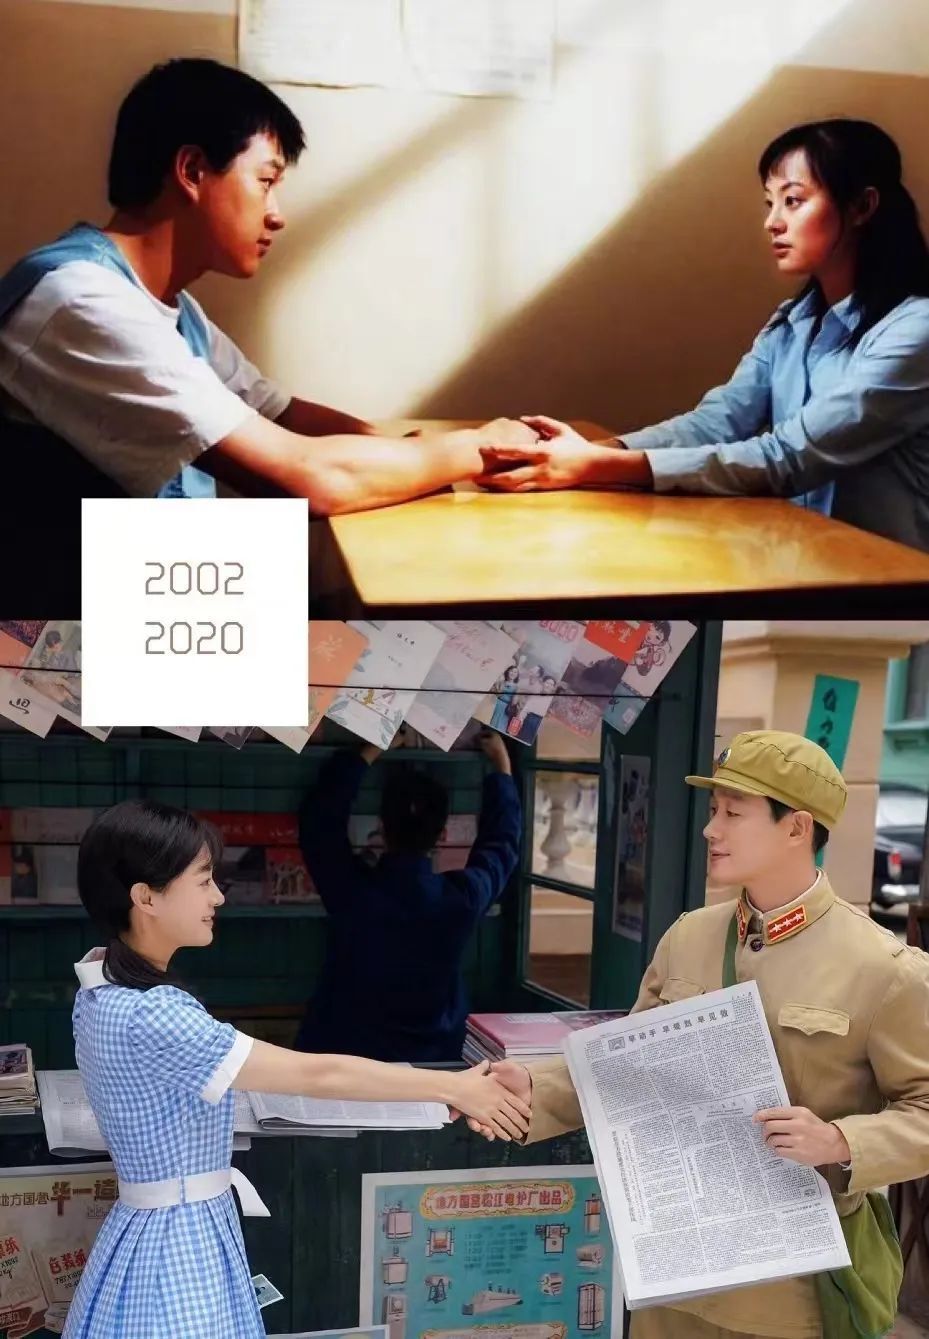 2021年,佟大为搭档宋佳,主演了家庭教育剧《小舍得》